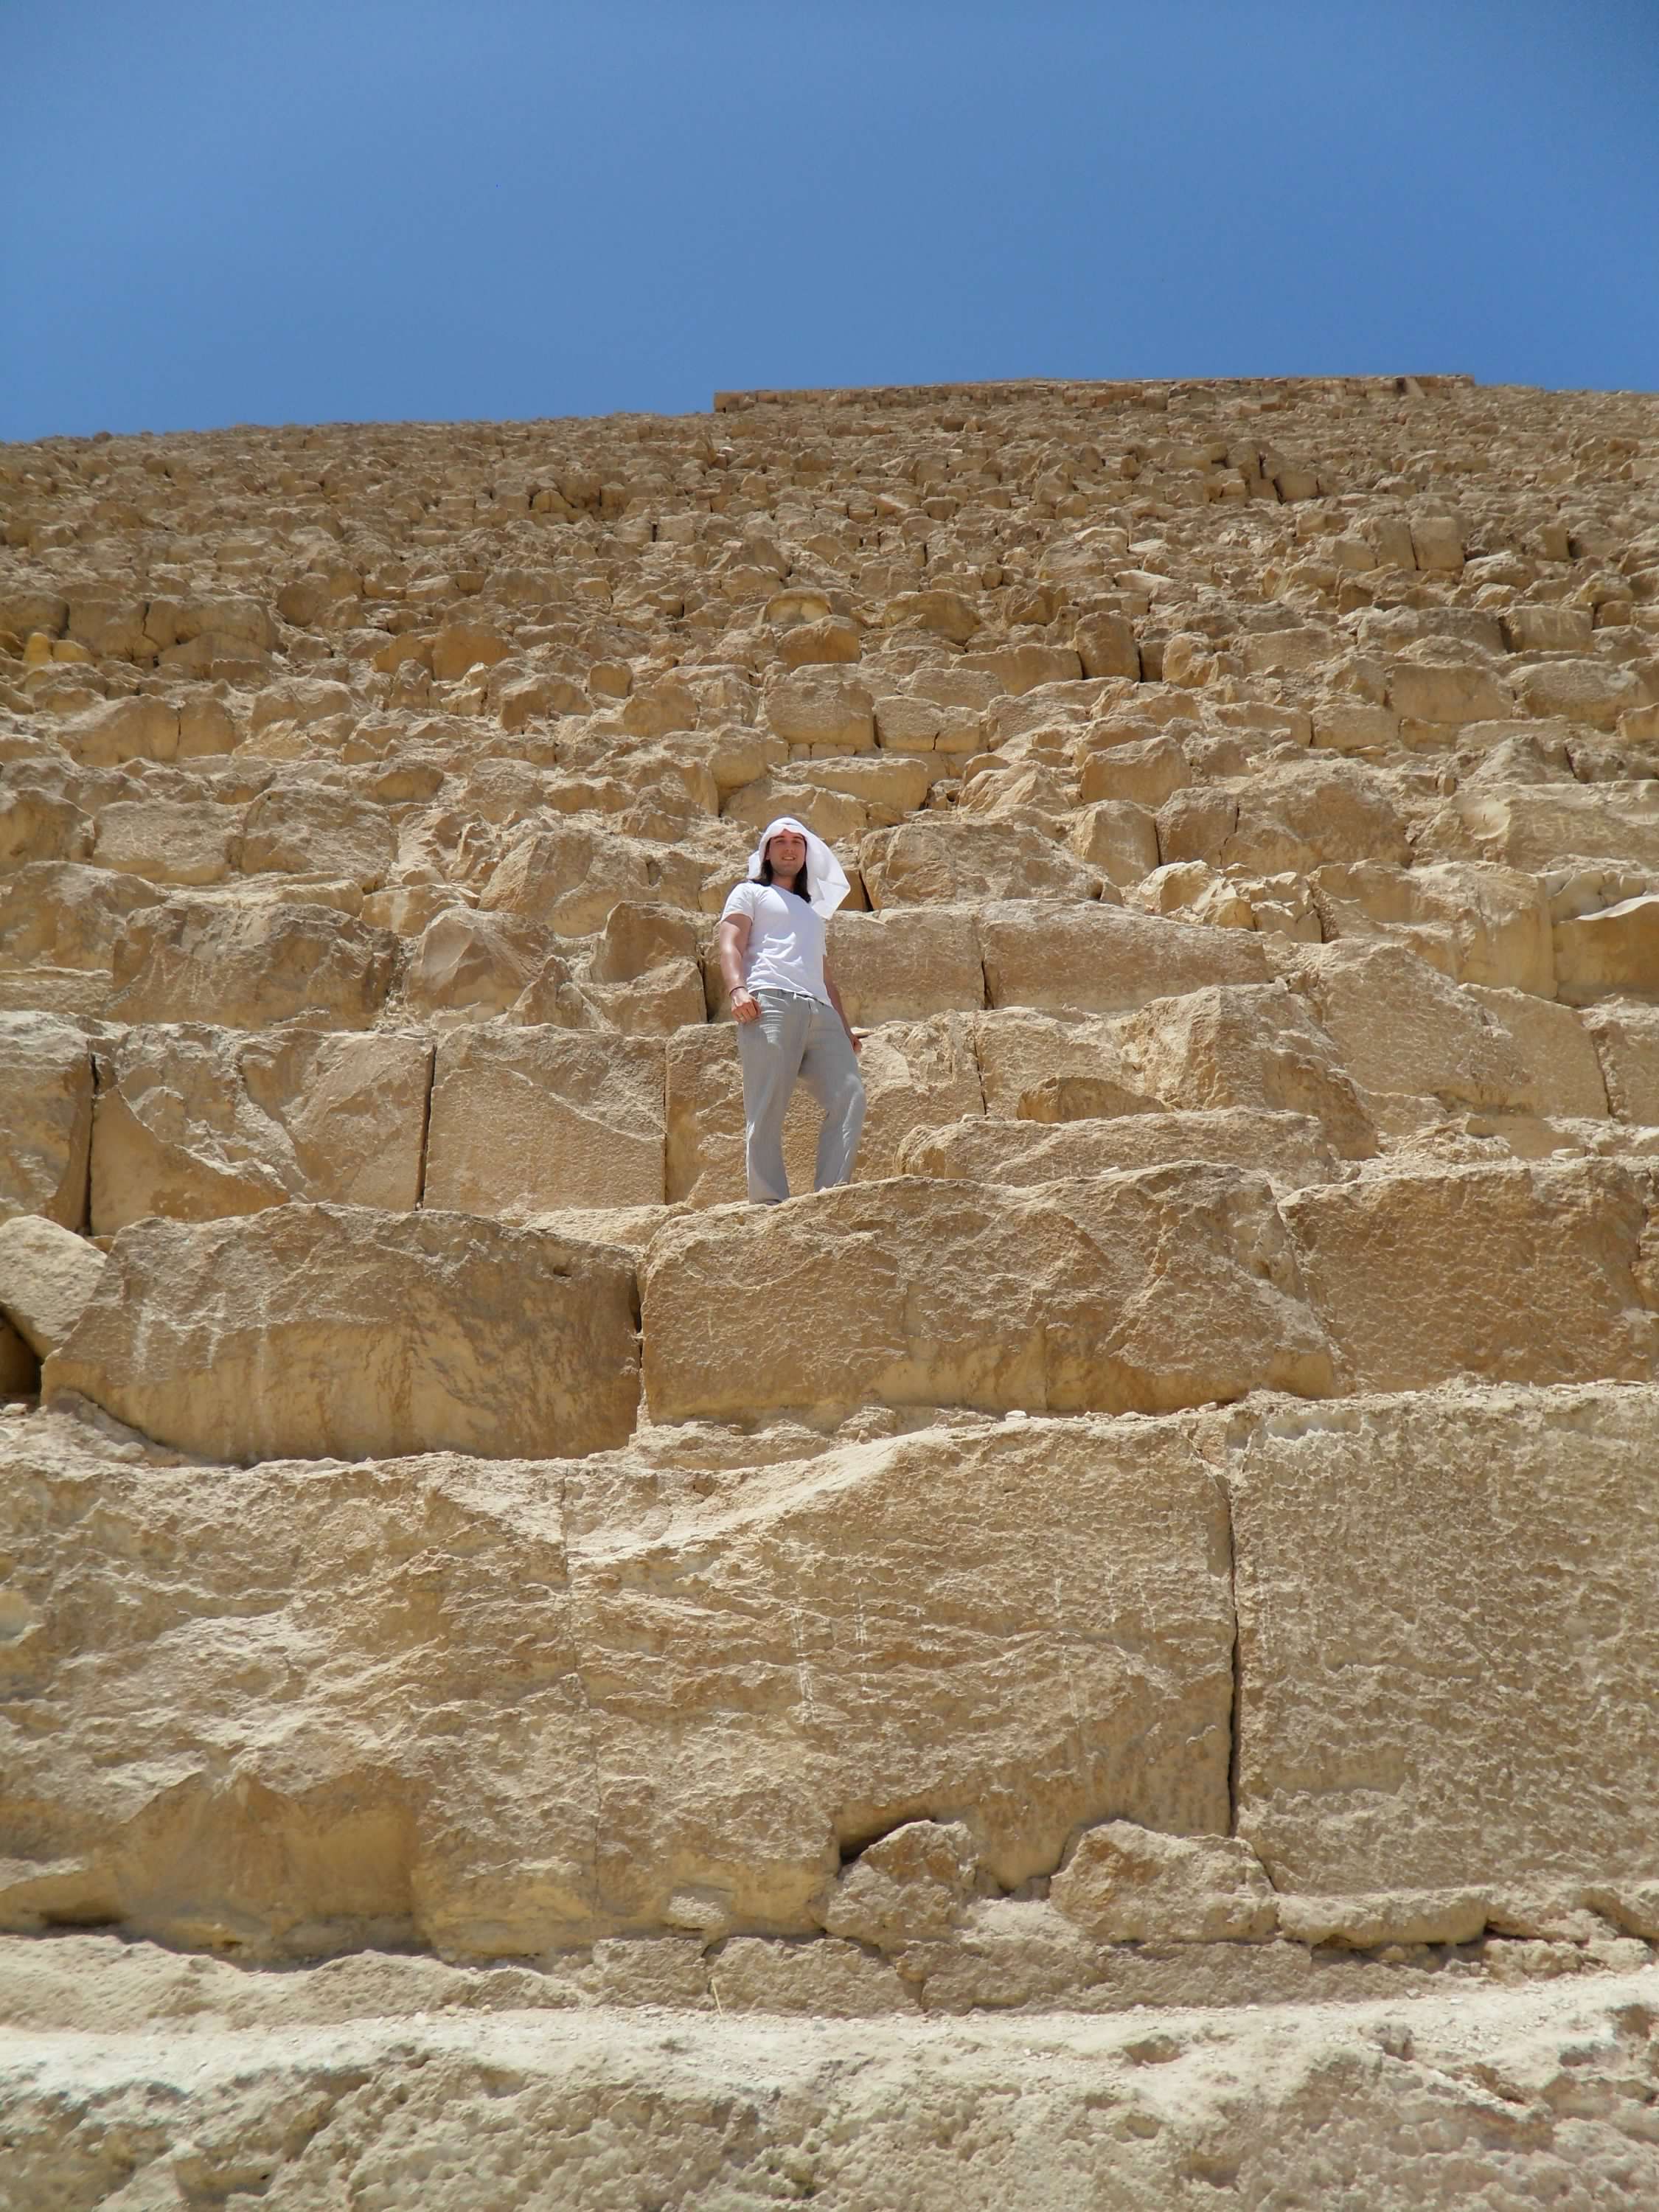 at the pyramids